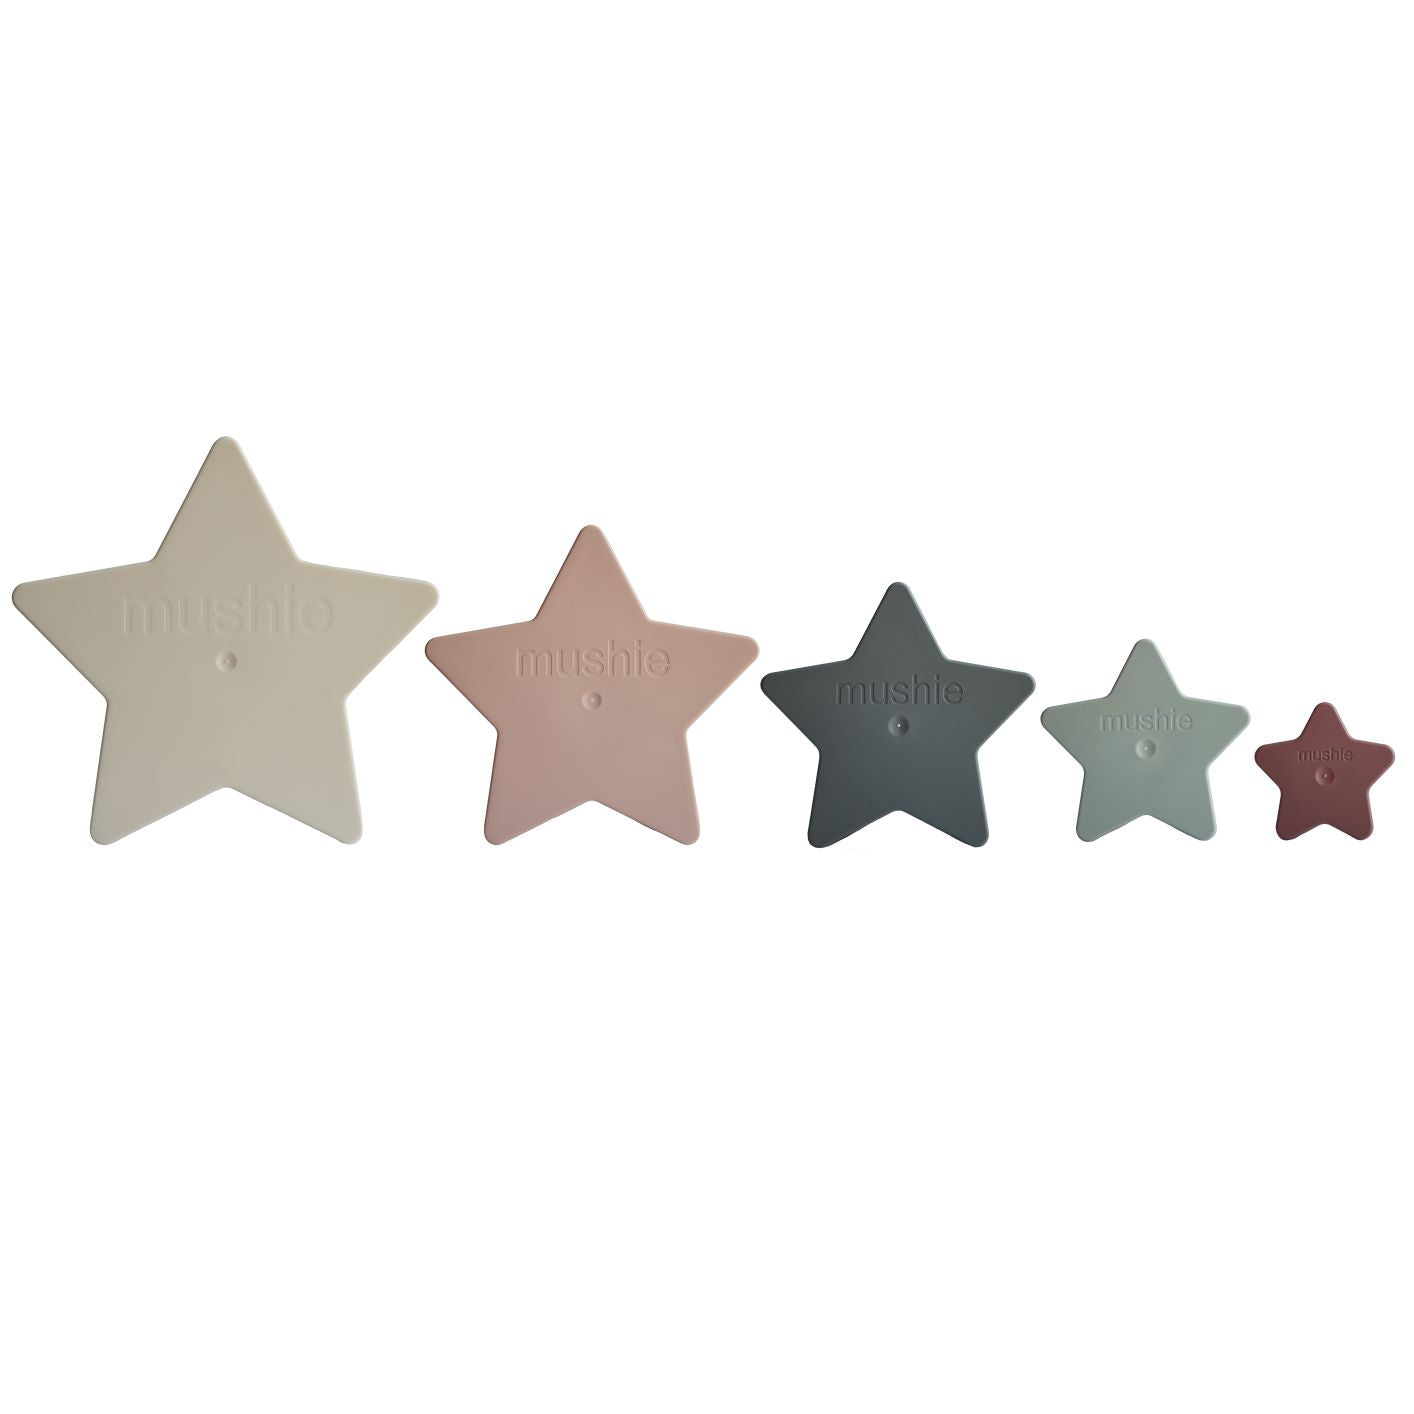 Csillag toronyépítő - pasztell színekben a pippadunál - mushie amerikai márka